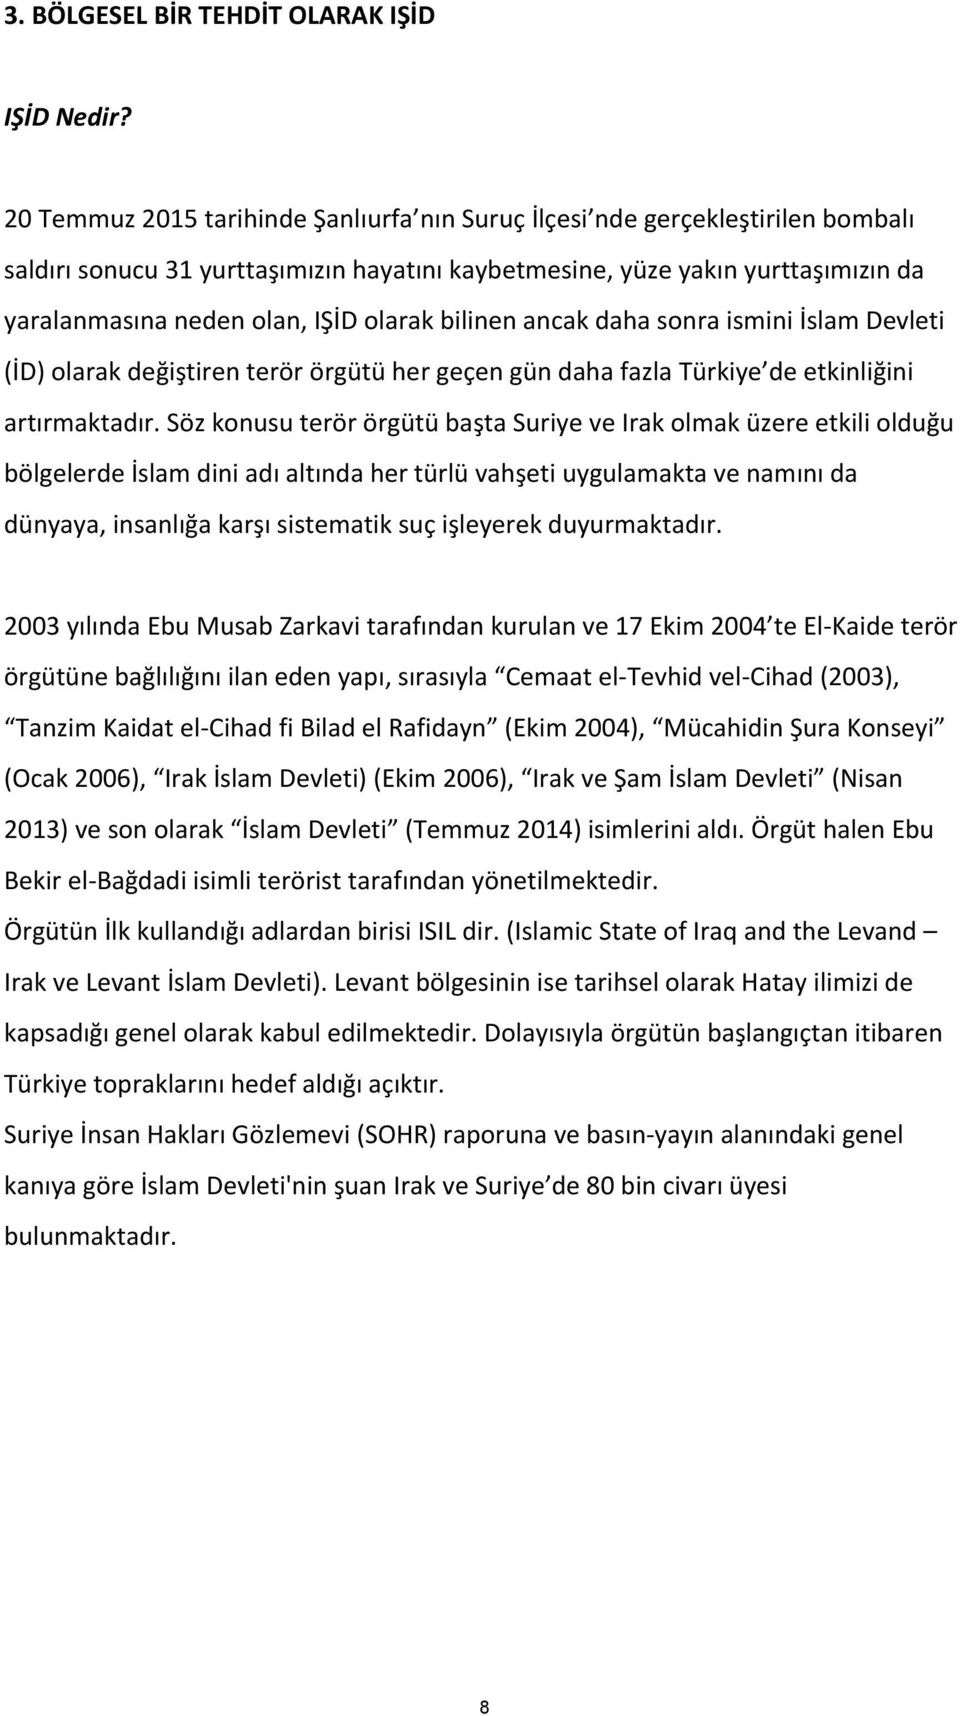 olarak bilinen ancak daha sonra ismini İslam Devleti (İD) olarak değiştiren terör örgütü her geçen gün daha fazla Türkiye de etkinliğini artırmaktadır.